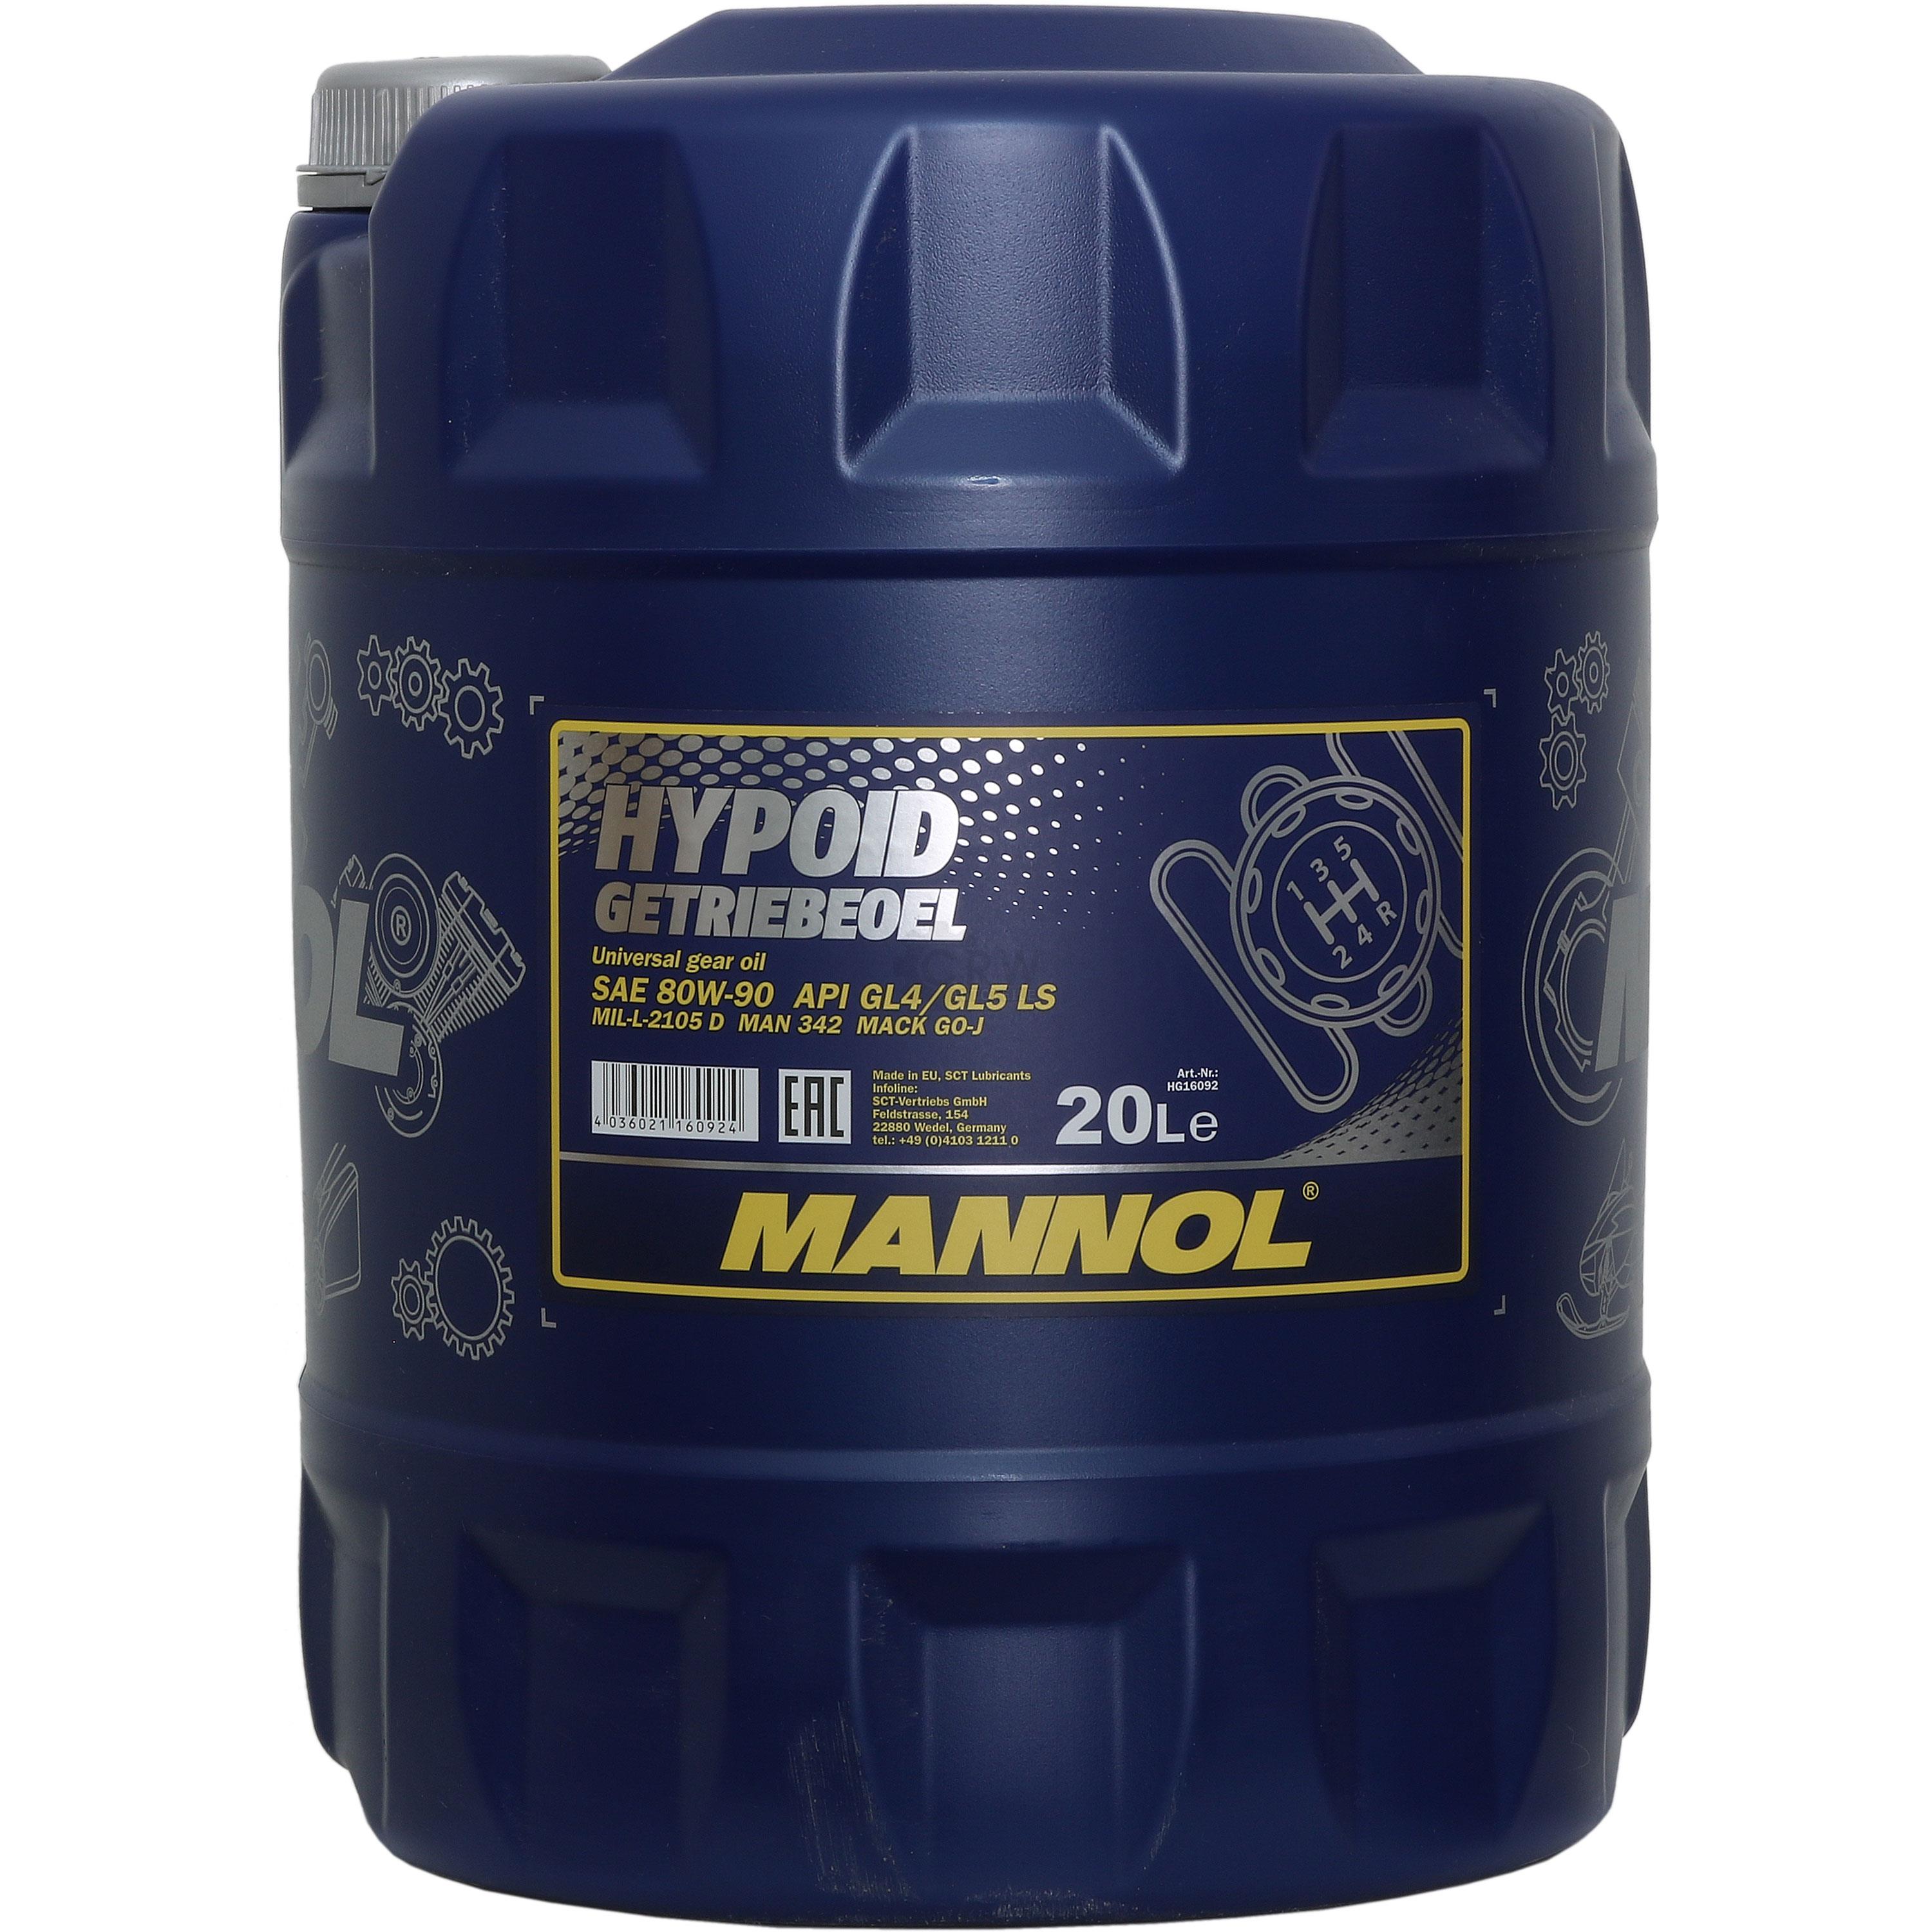 20 Liter  MANNOL Getriebeöl Hypoid Getriebeoel 80W-90 API GL4/GL 5